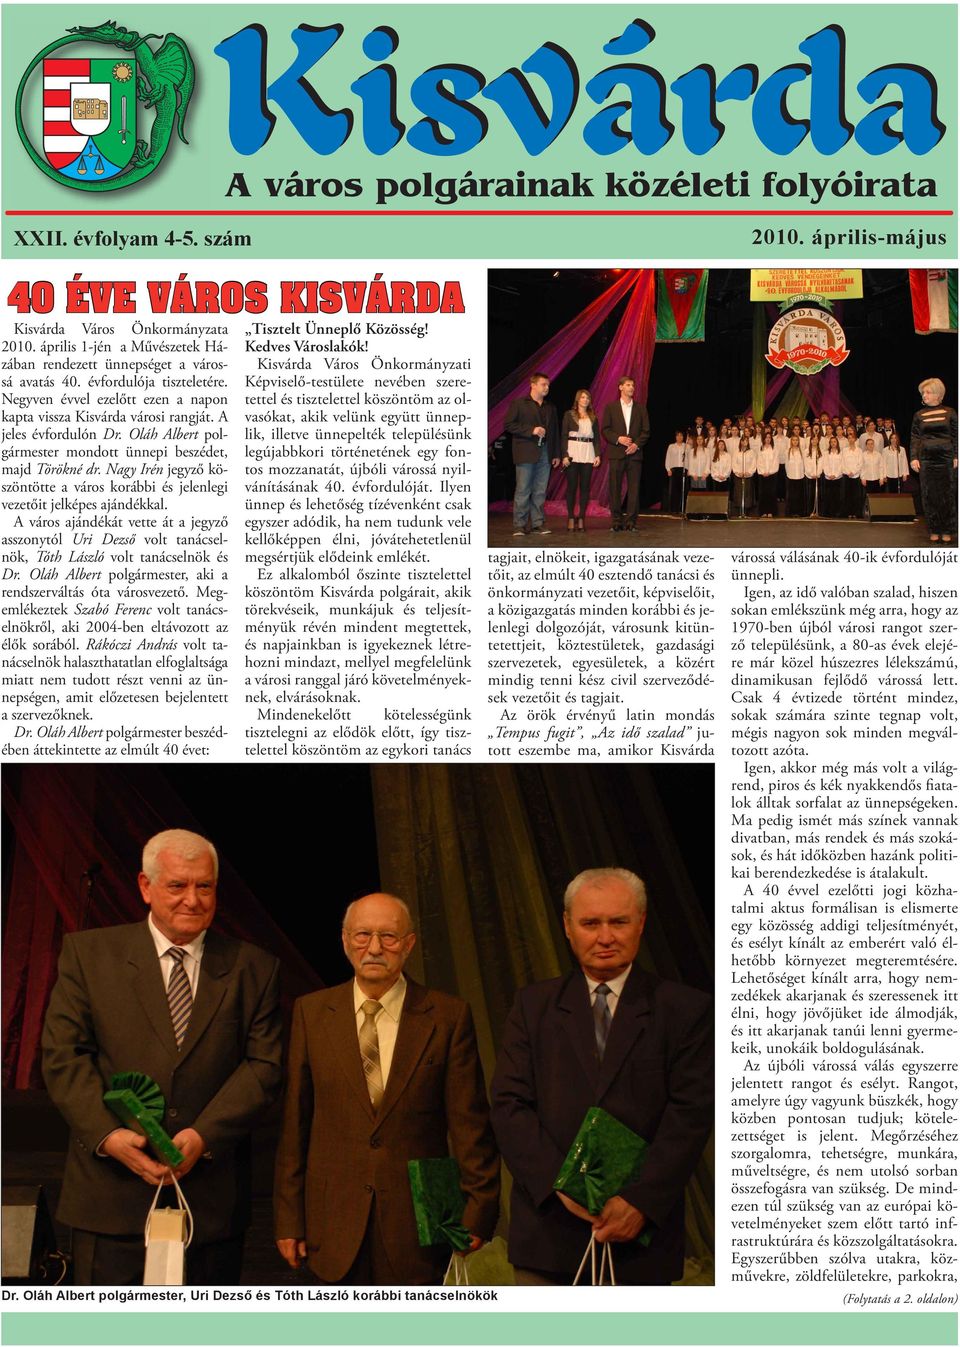 Kisvárda. A város polgárainak közéleti folyóirata 40 ÉVE VÁROS KISVÁRDA  április-május. XXII. évfolyam 4-5. szám - PDF Free Download